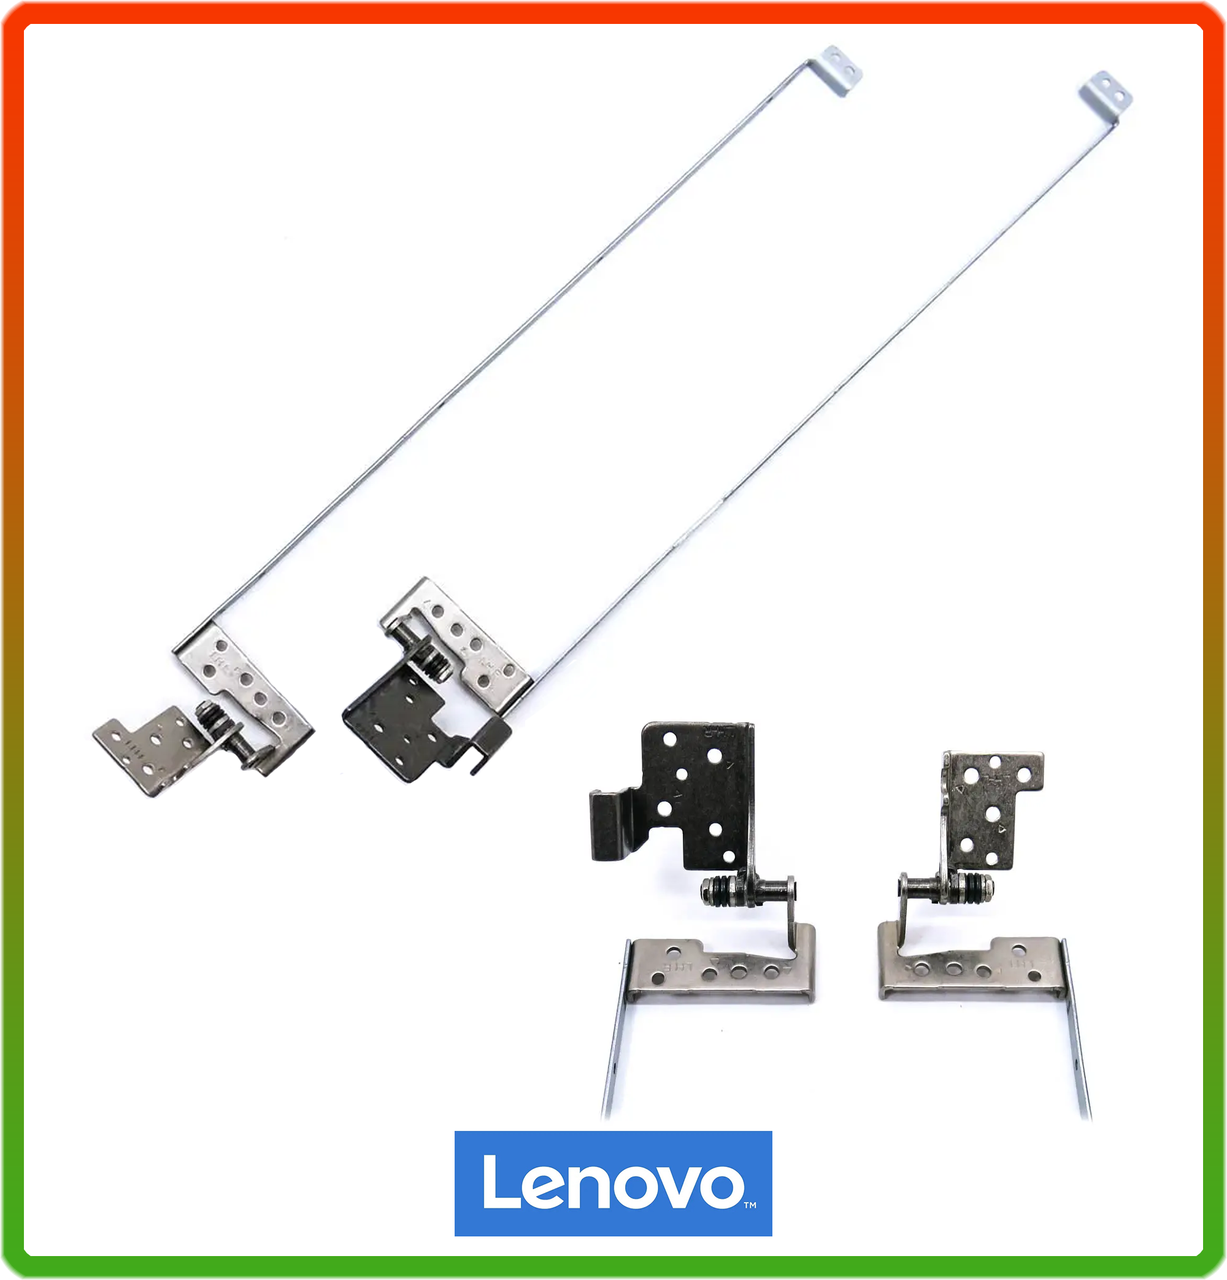 Петли для Lenovo G700 Series (13N0-B5M0203, 13N0-B5M0202). Пара, ліва + права